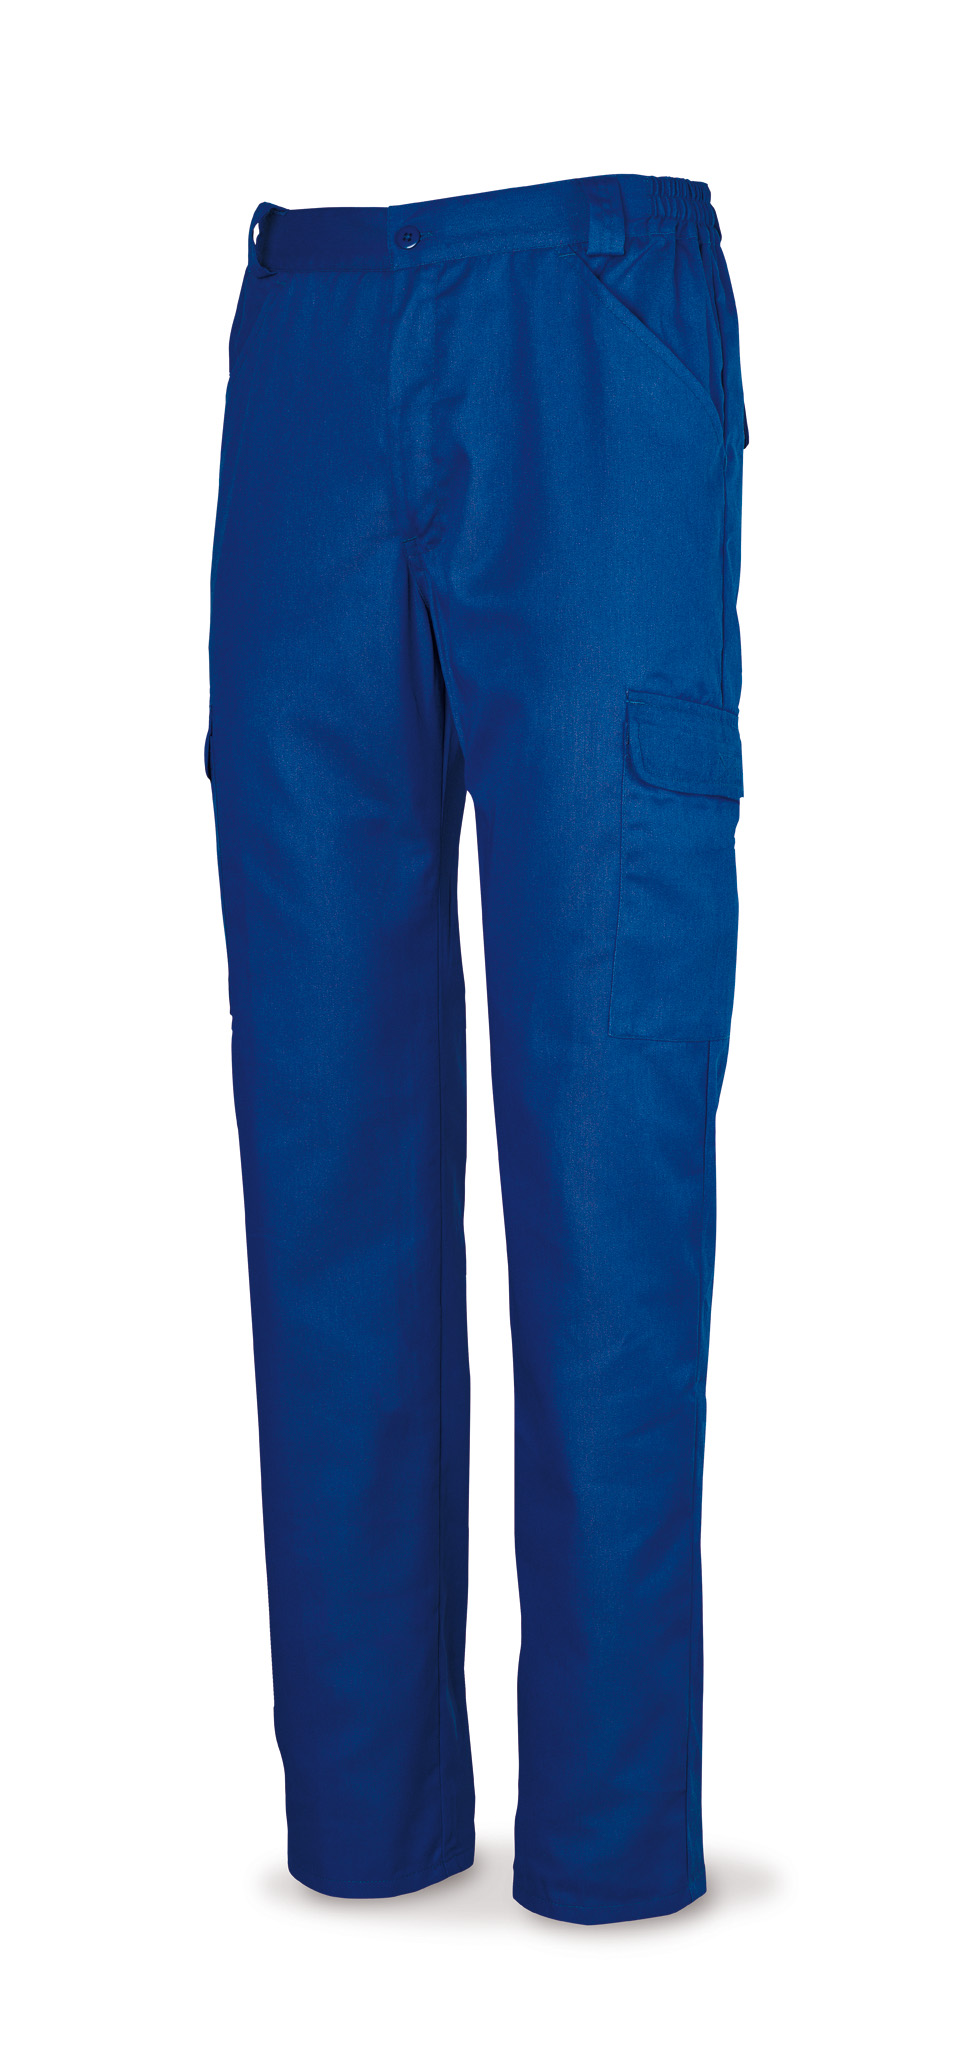 388-PE Vetements de travail laboral Série Basics 100% Cotton. Royal blue.